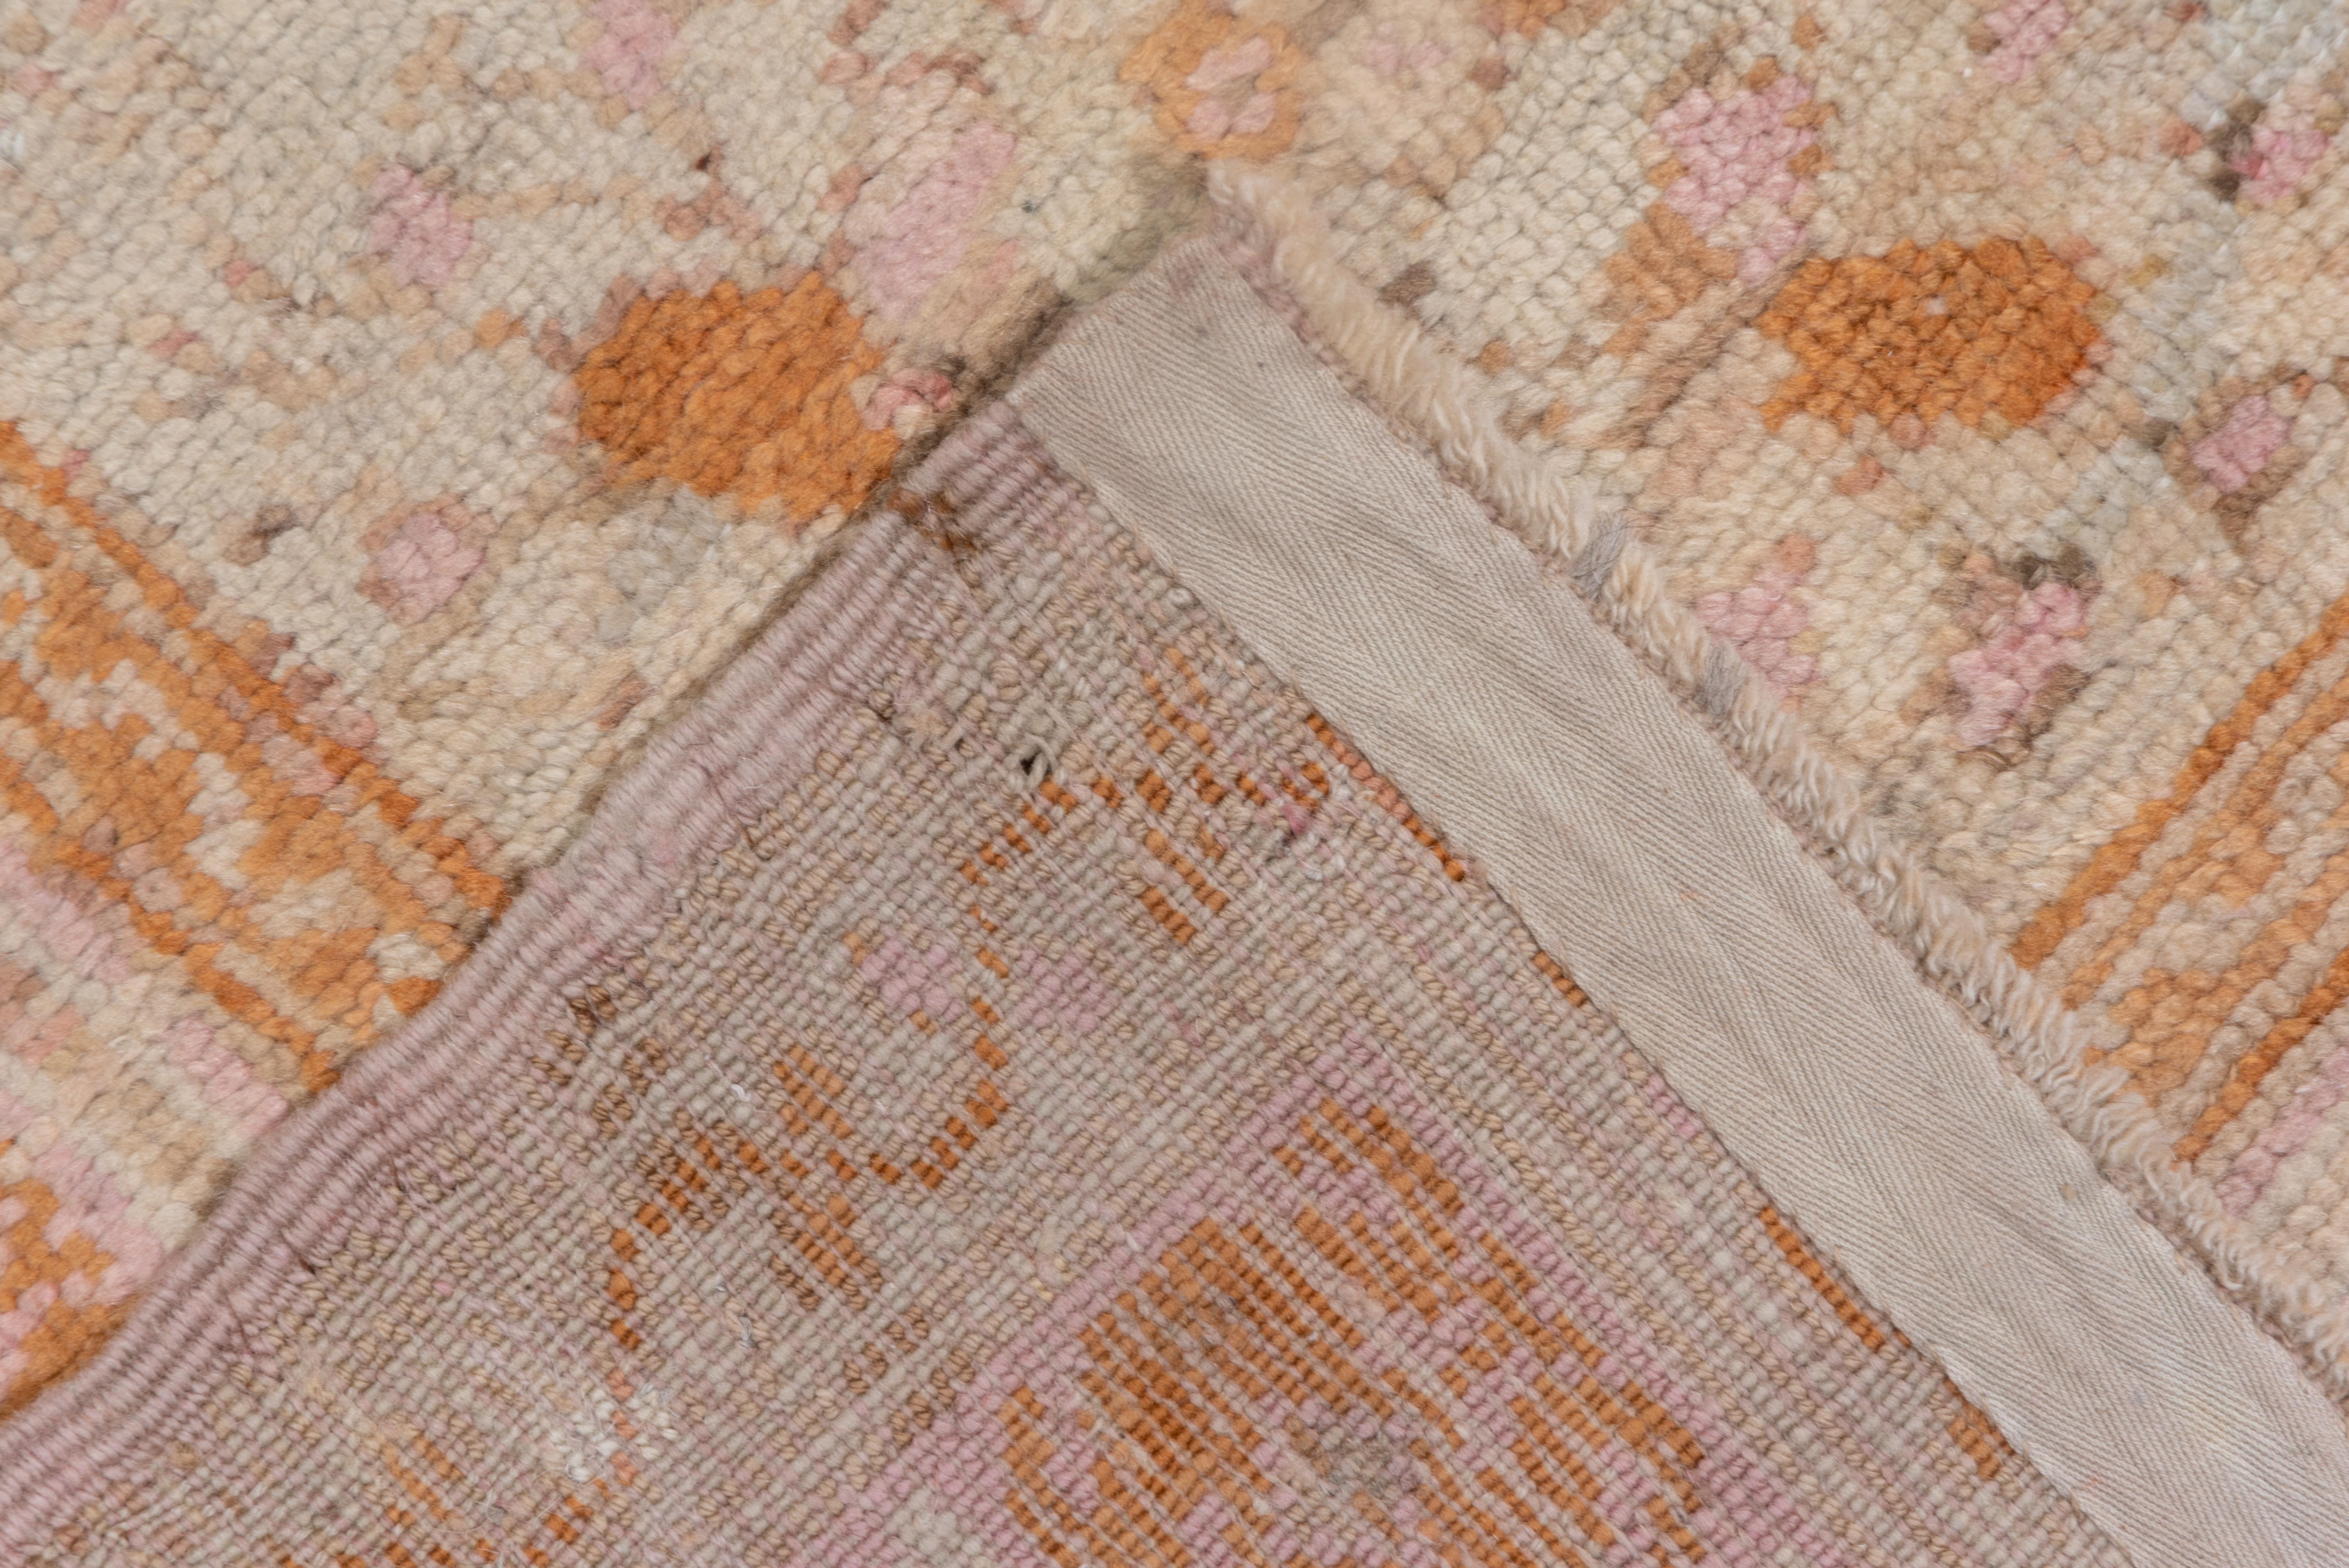 Massive Antique Turkish Oushak Mansion Carpet, Pink, Ivory & Orange Tones For Sale 1